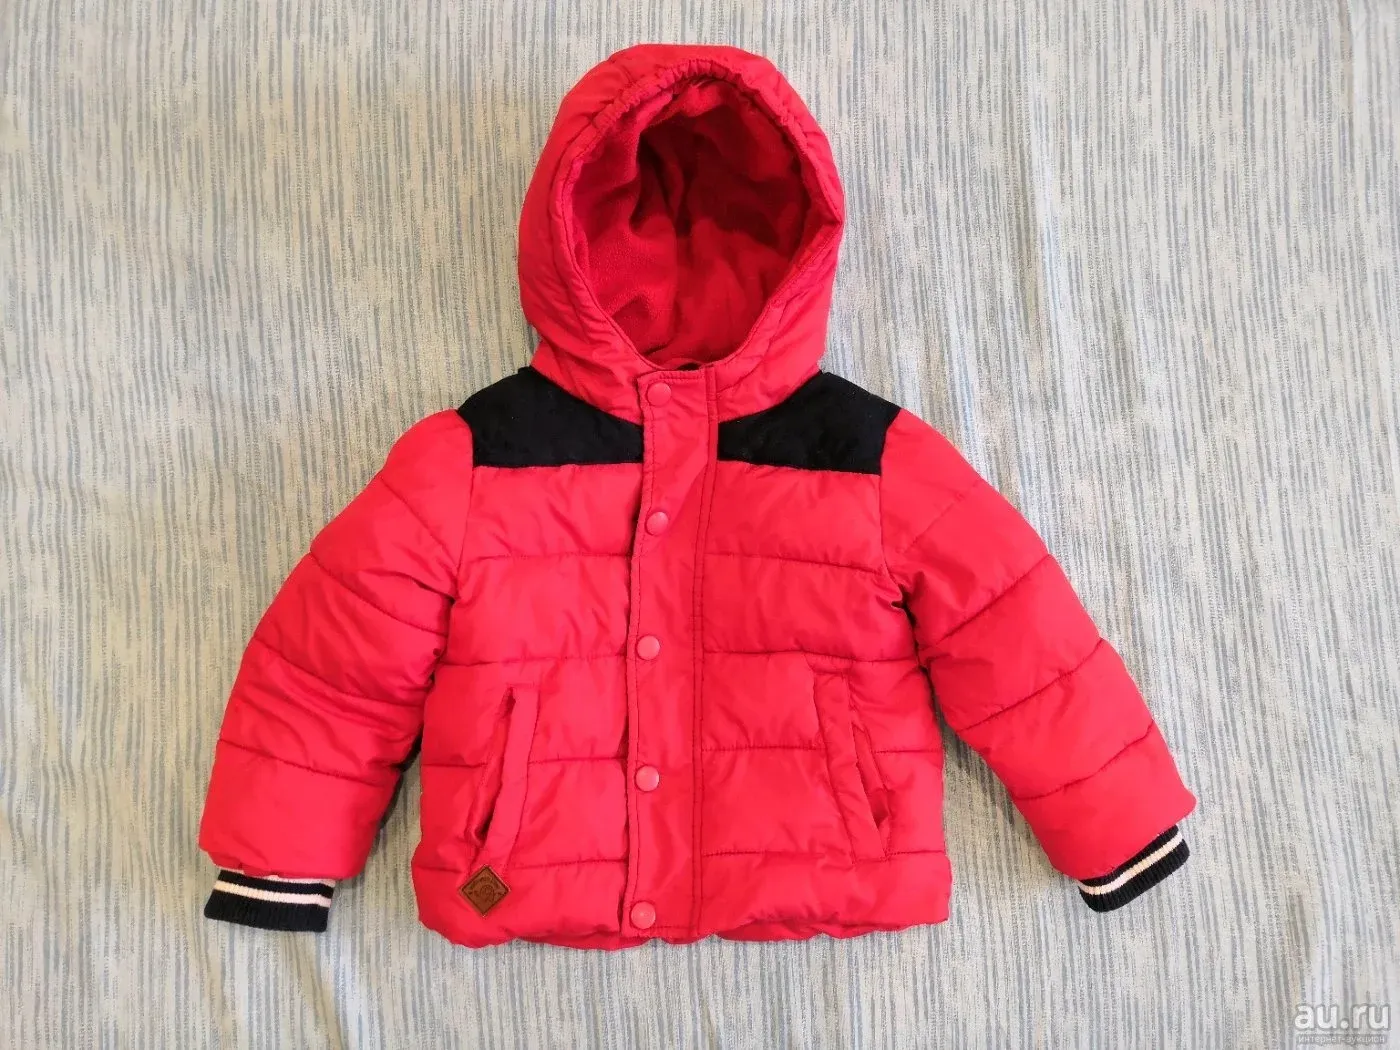 Куртка Baby go. Куртка Baby go на мальчика красная. Куртка Беби гоу зимняя. Жилетка Беби гоу. Куртка беби гоу